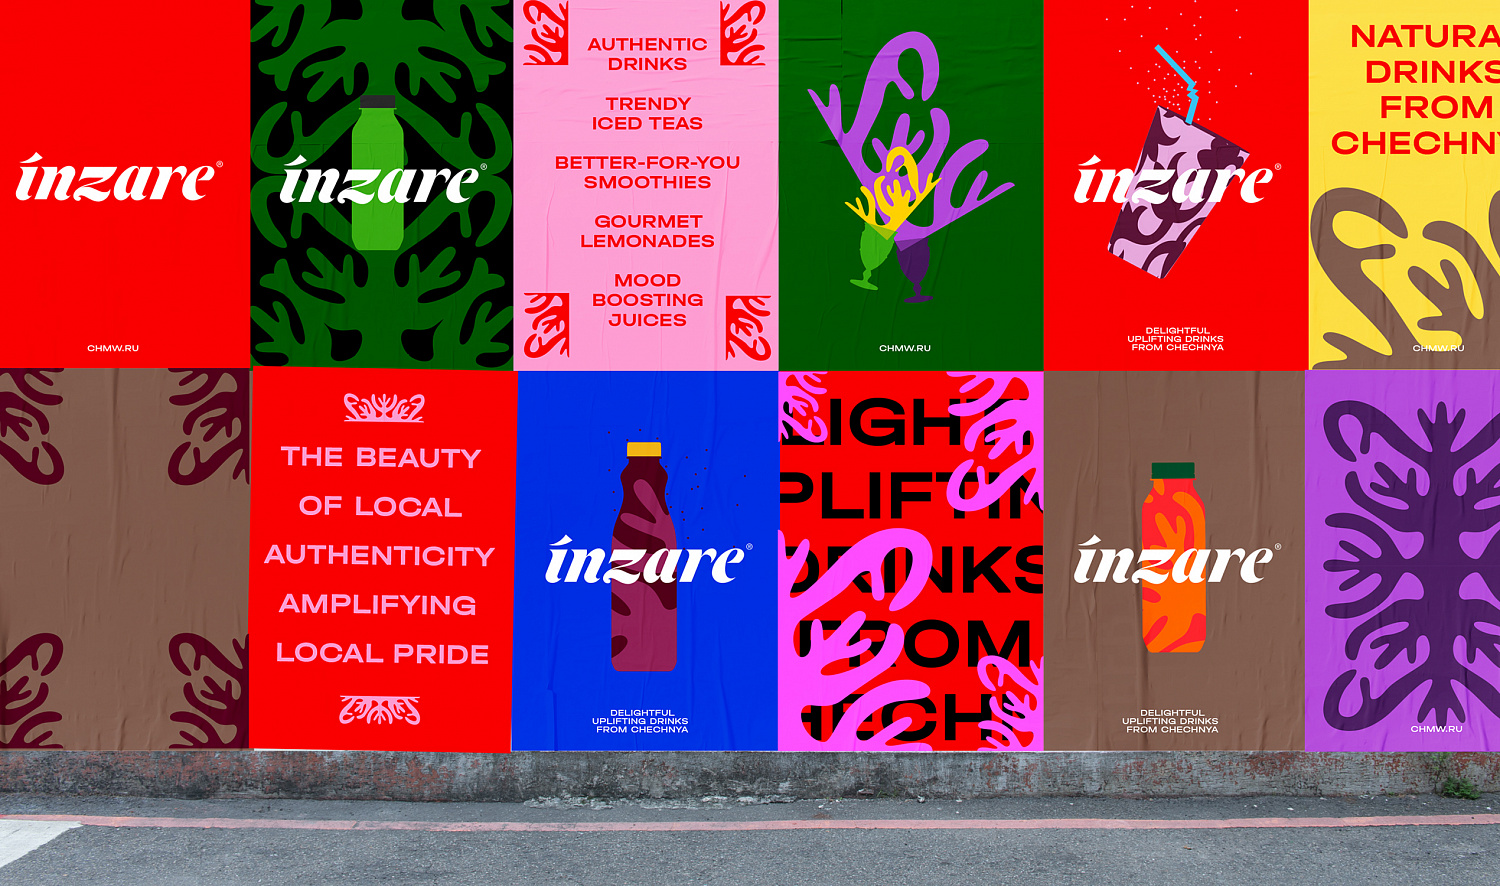 Inzare: коммуникационная стратегия, айдентика, нейминг для чеченского бренда напитков - Портфолио Depot